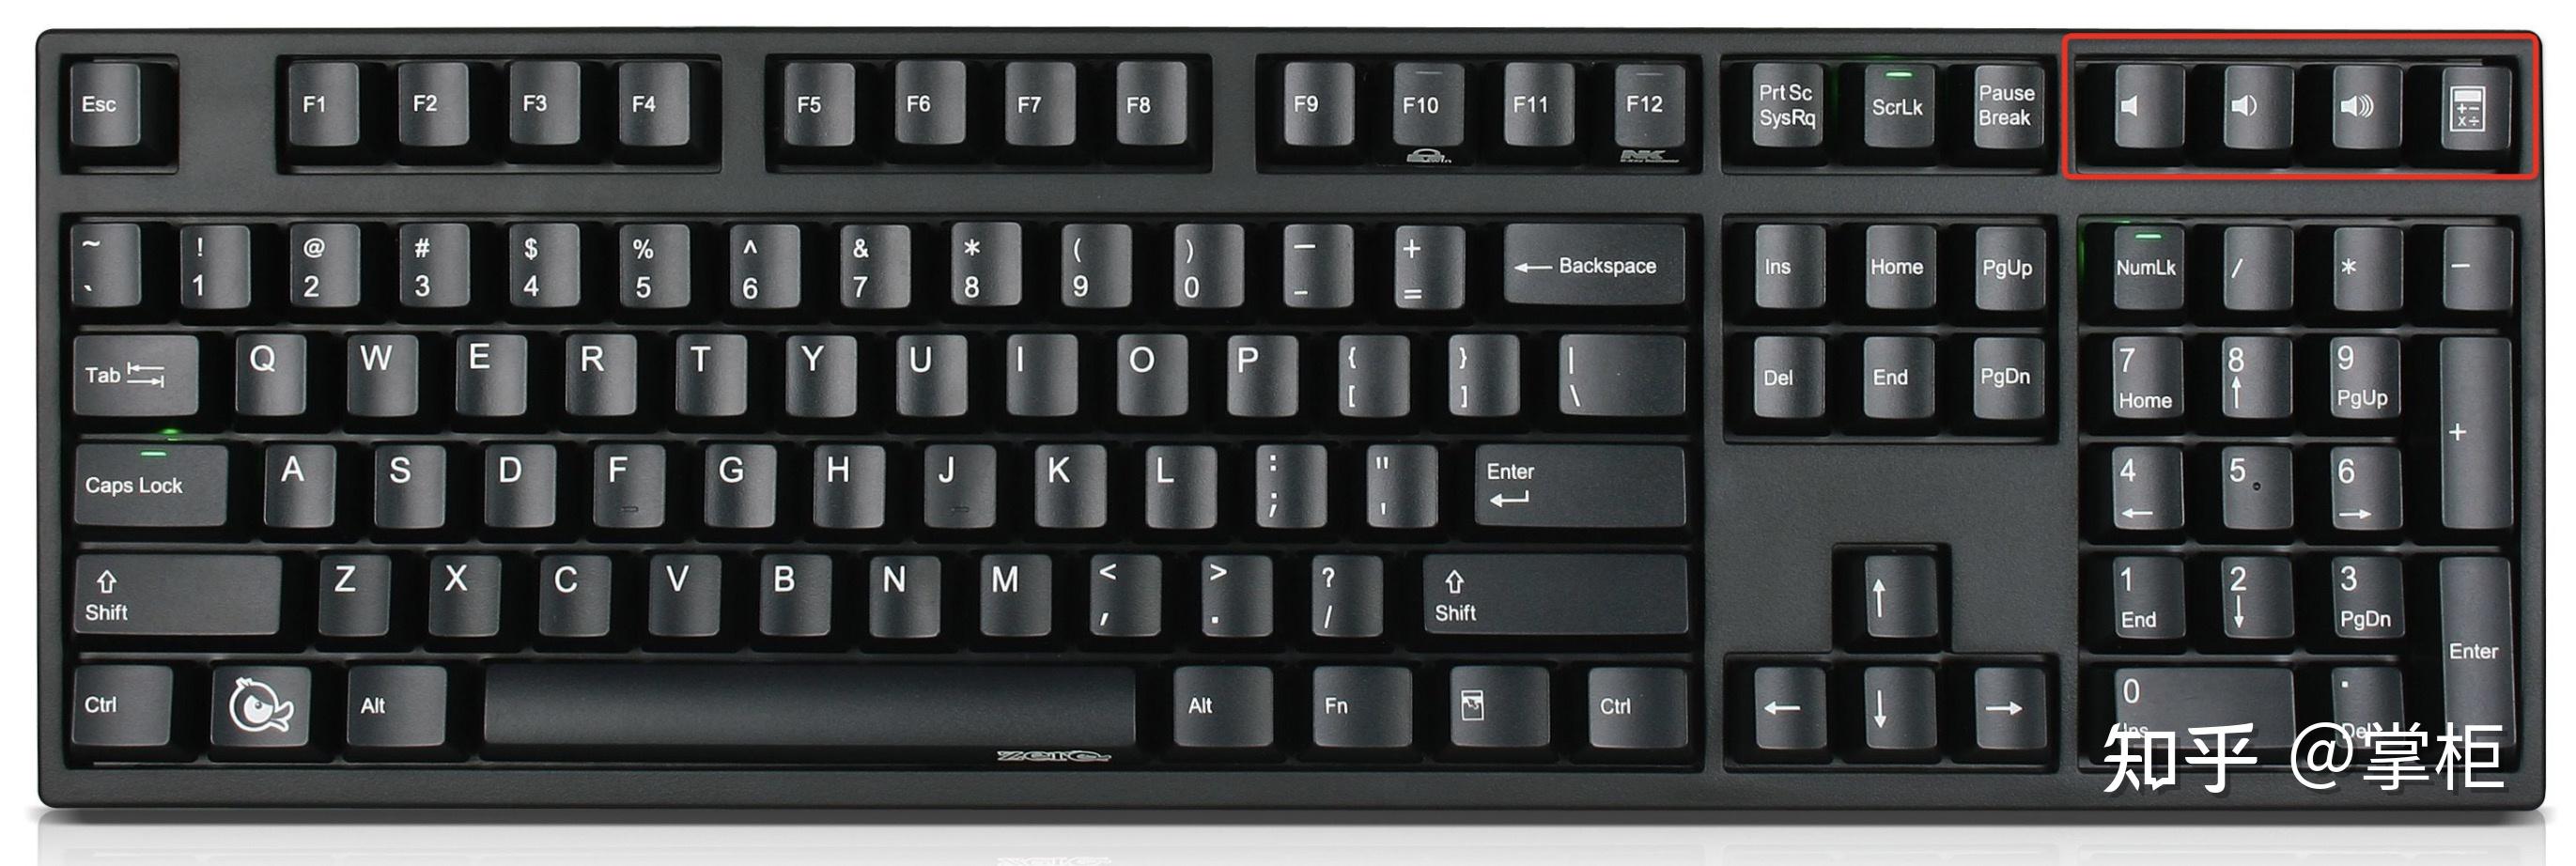 键盘键位图机械排列图图片